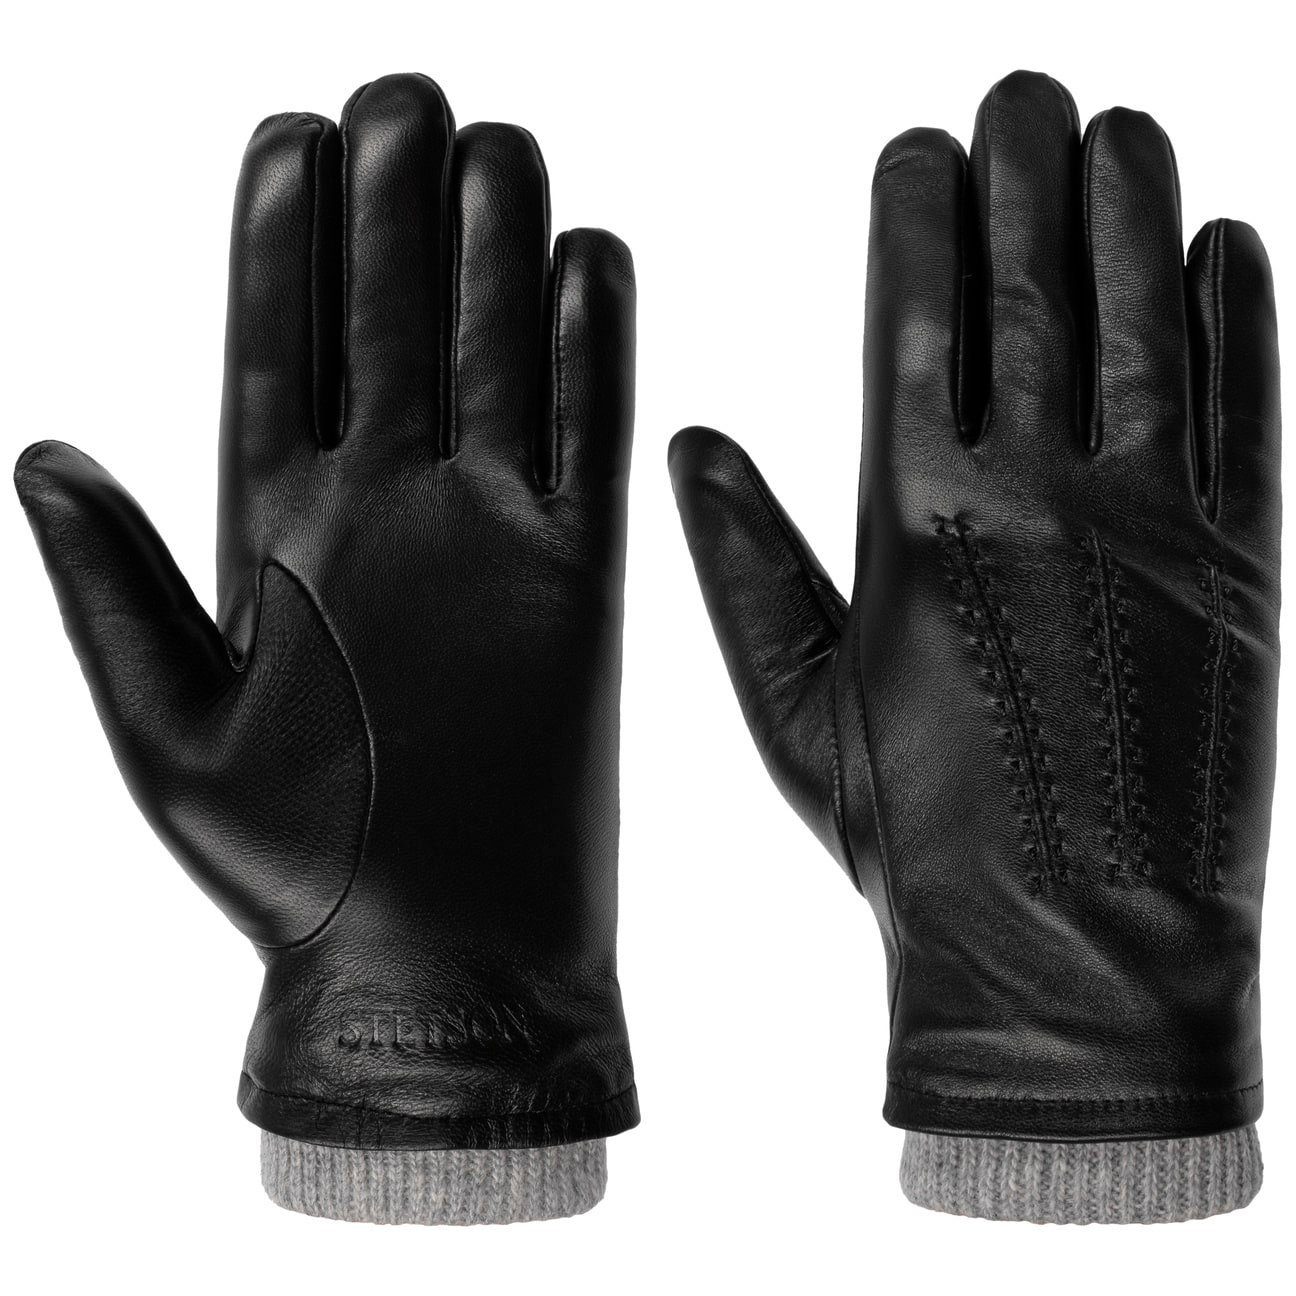 Informationen zum Versandhandel Stetson Lederhandschuhe Handschuhe mit schwarz Futter